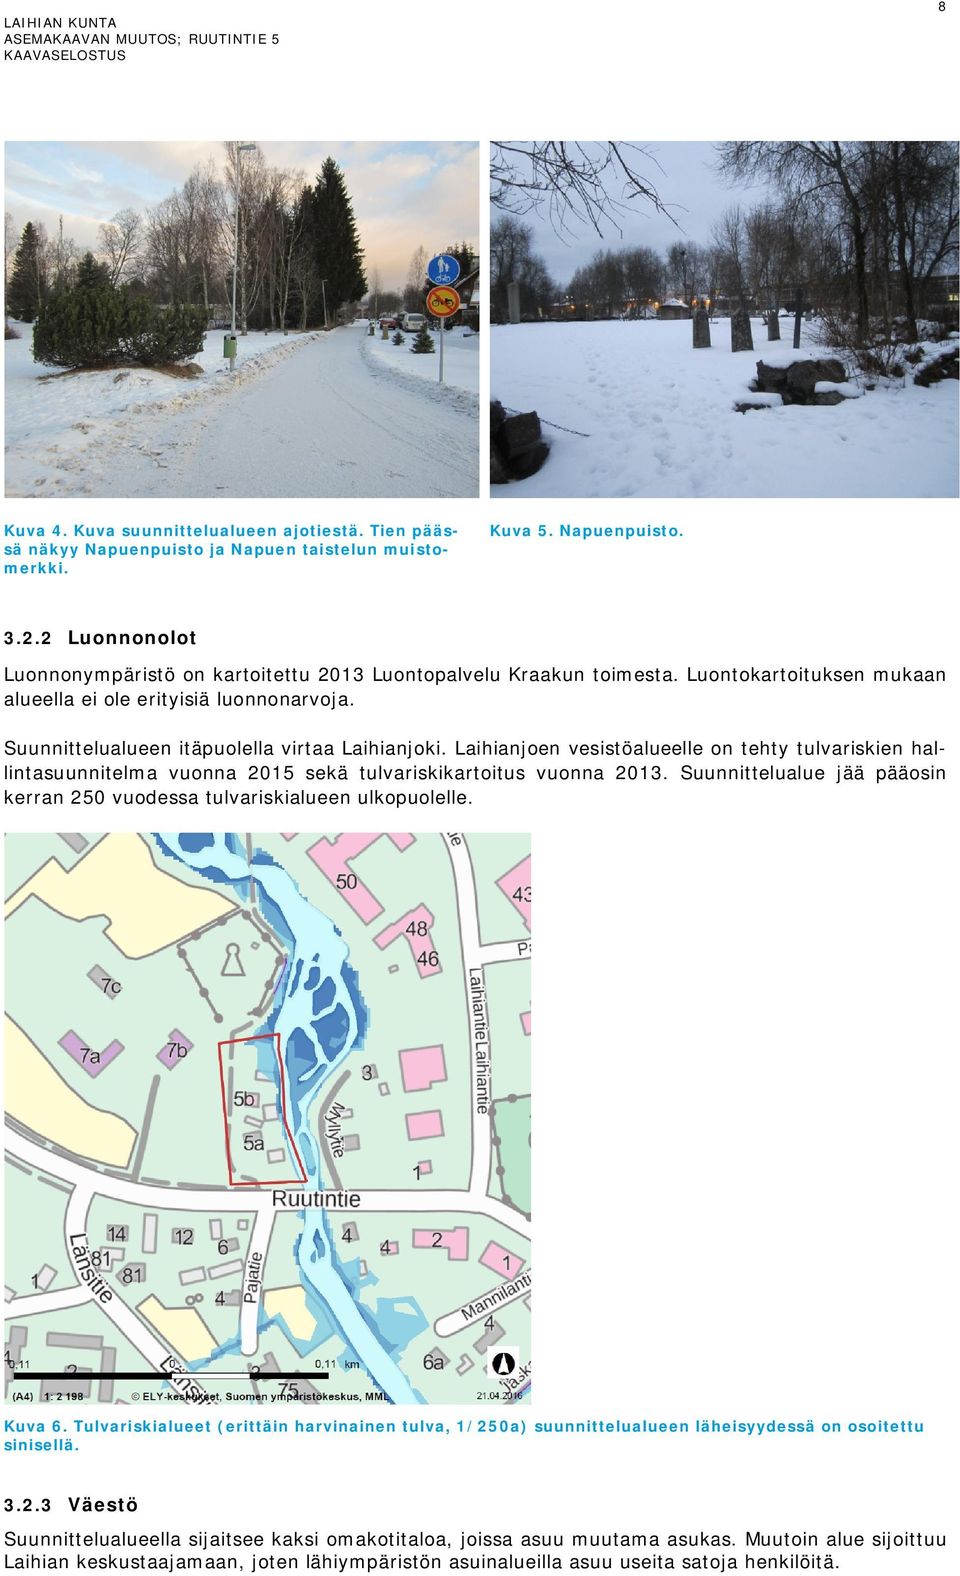 Laihianjoen vesistöalueelle on tehty tulvariskien hallintasuunnitelma vuonna 2015 sekä tulvariskikartoitus vuonna 2013. Suunnittelualue jää pääosin kerran 250 vuodessa tulvariskialueen ulkopuolelle.